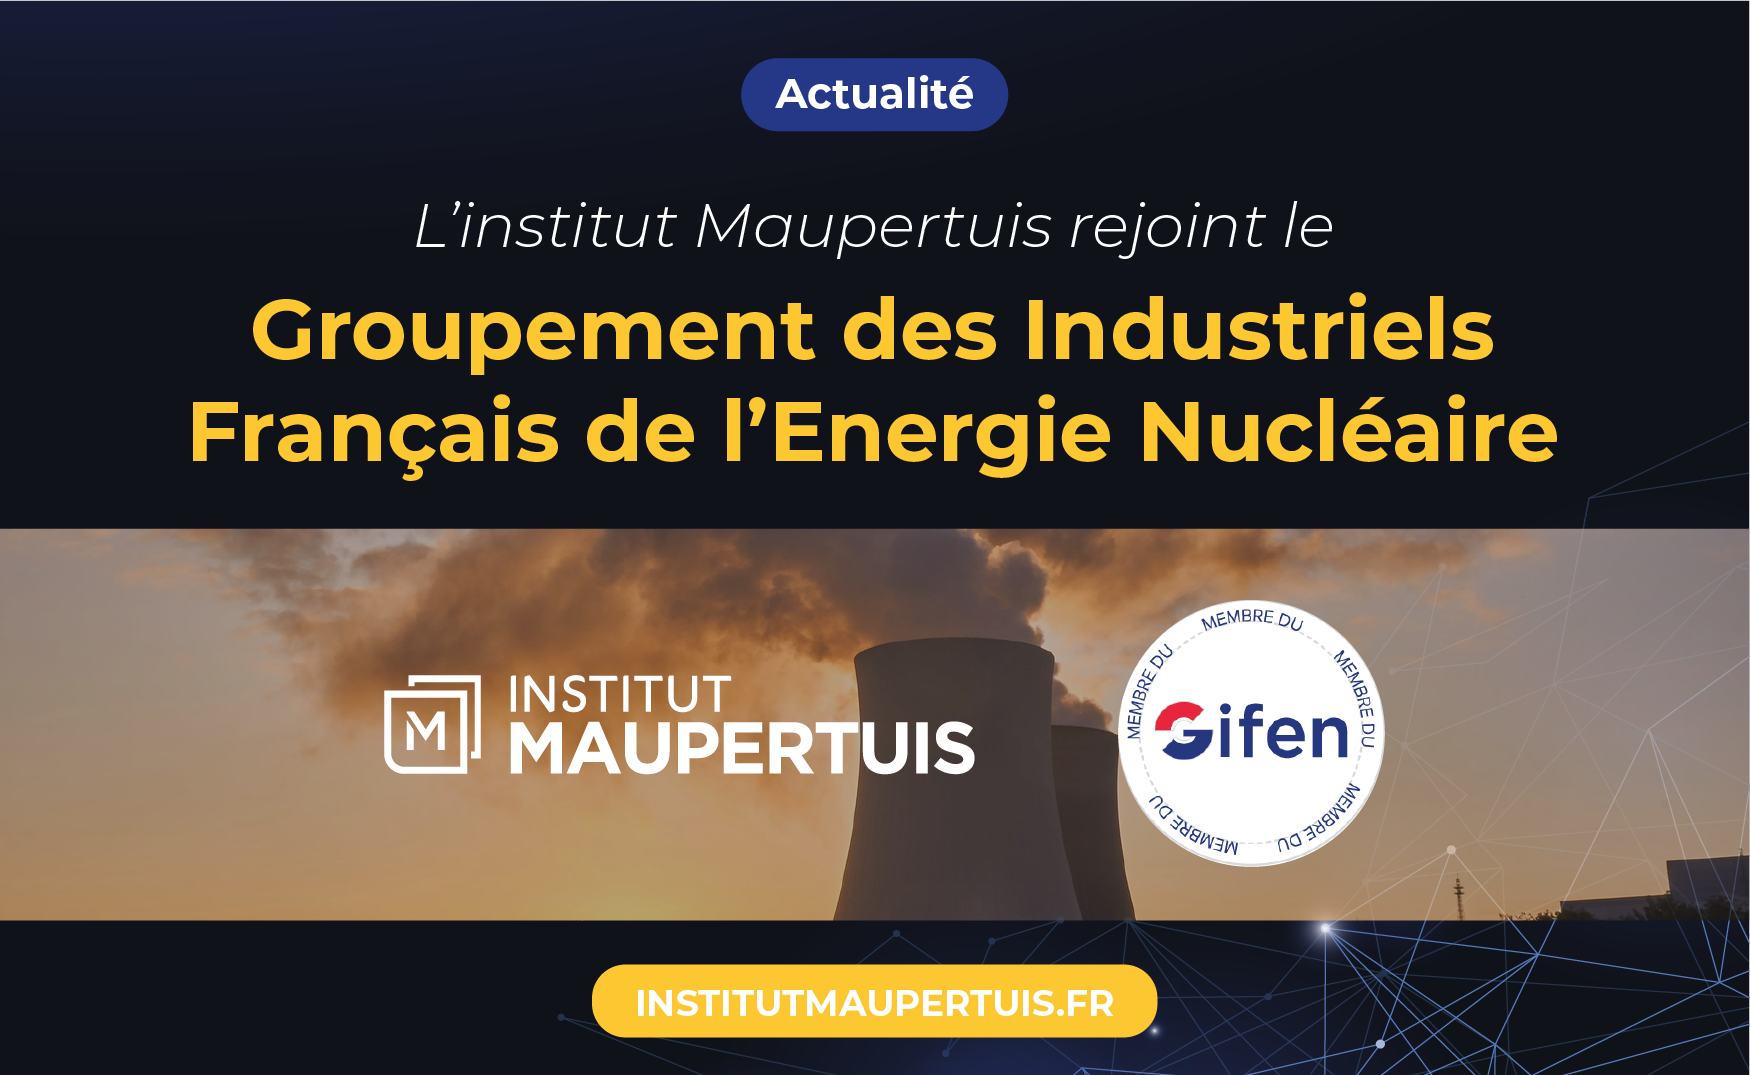 GIFEN - Groupement des Industriels Français de l’Energie Nucléaire